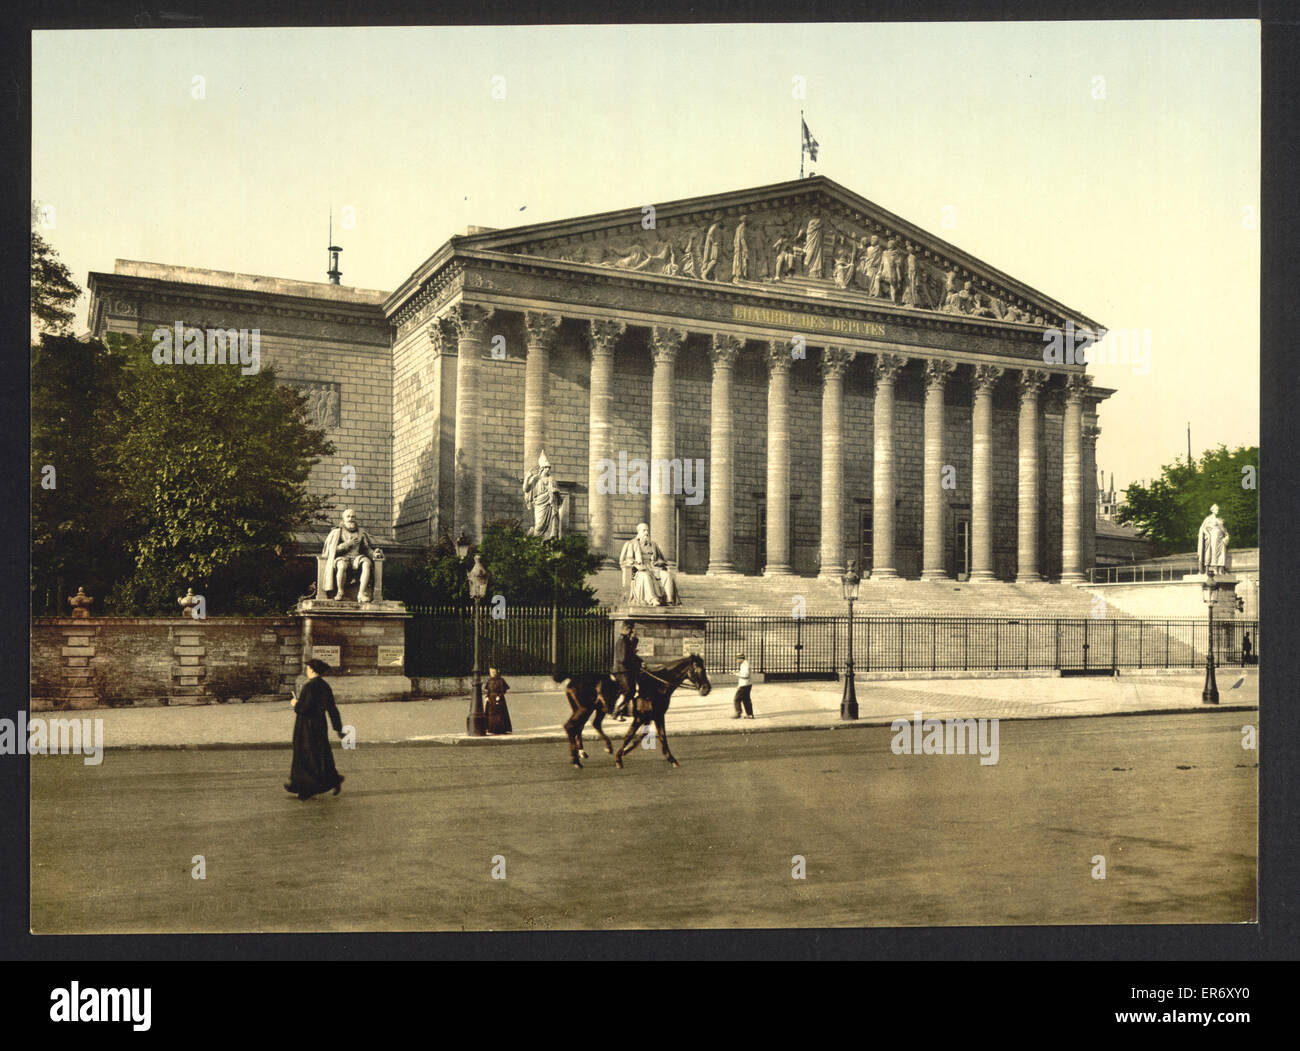 La Chambre des députés, Paris, France Banque D'Images